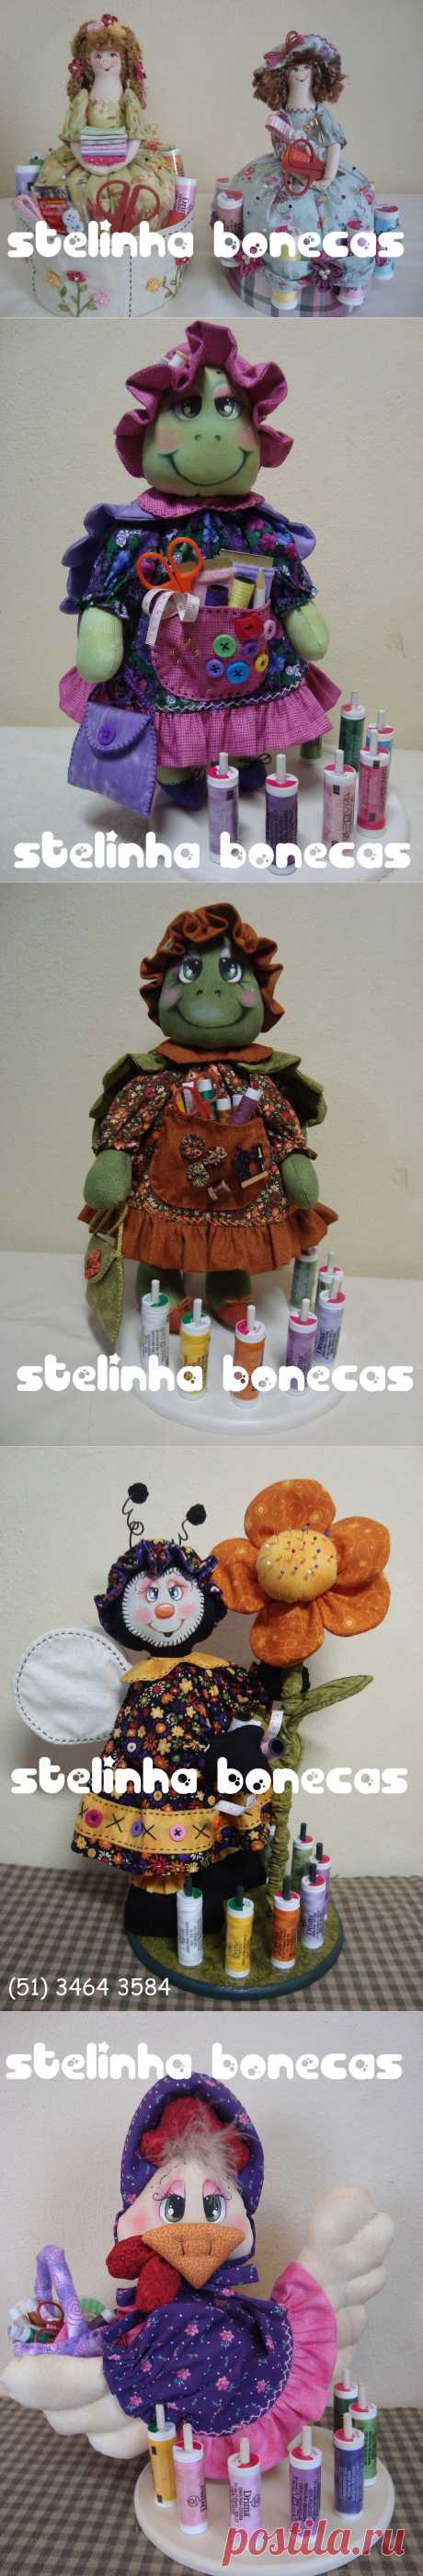 Мастер кукольник из Перу Stelinha Bonecas (Стелинха Бонекас) - текстильные полезные вещицы для дома